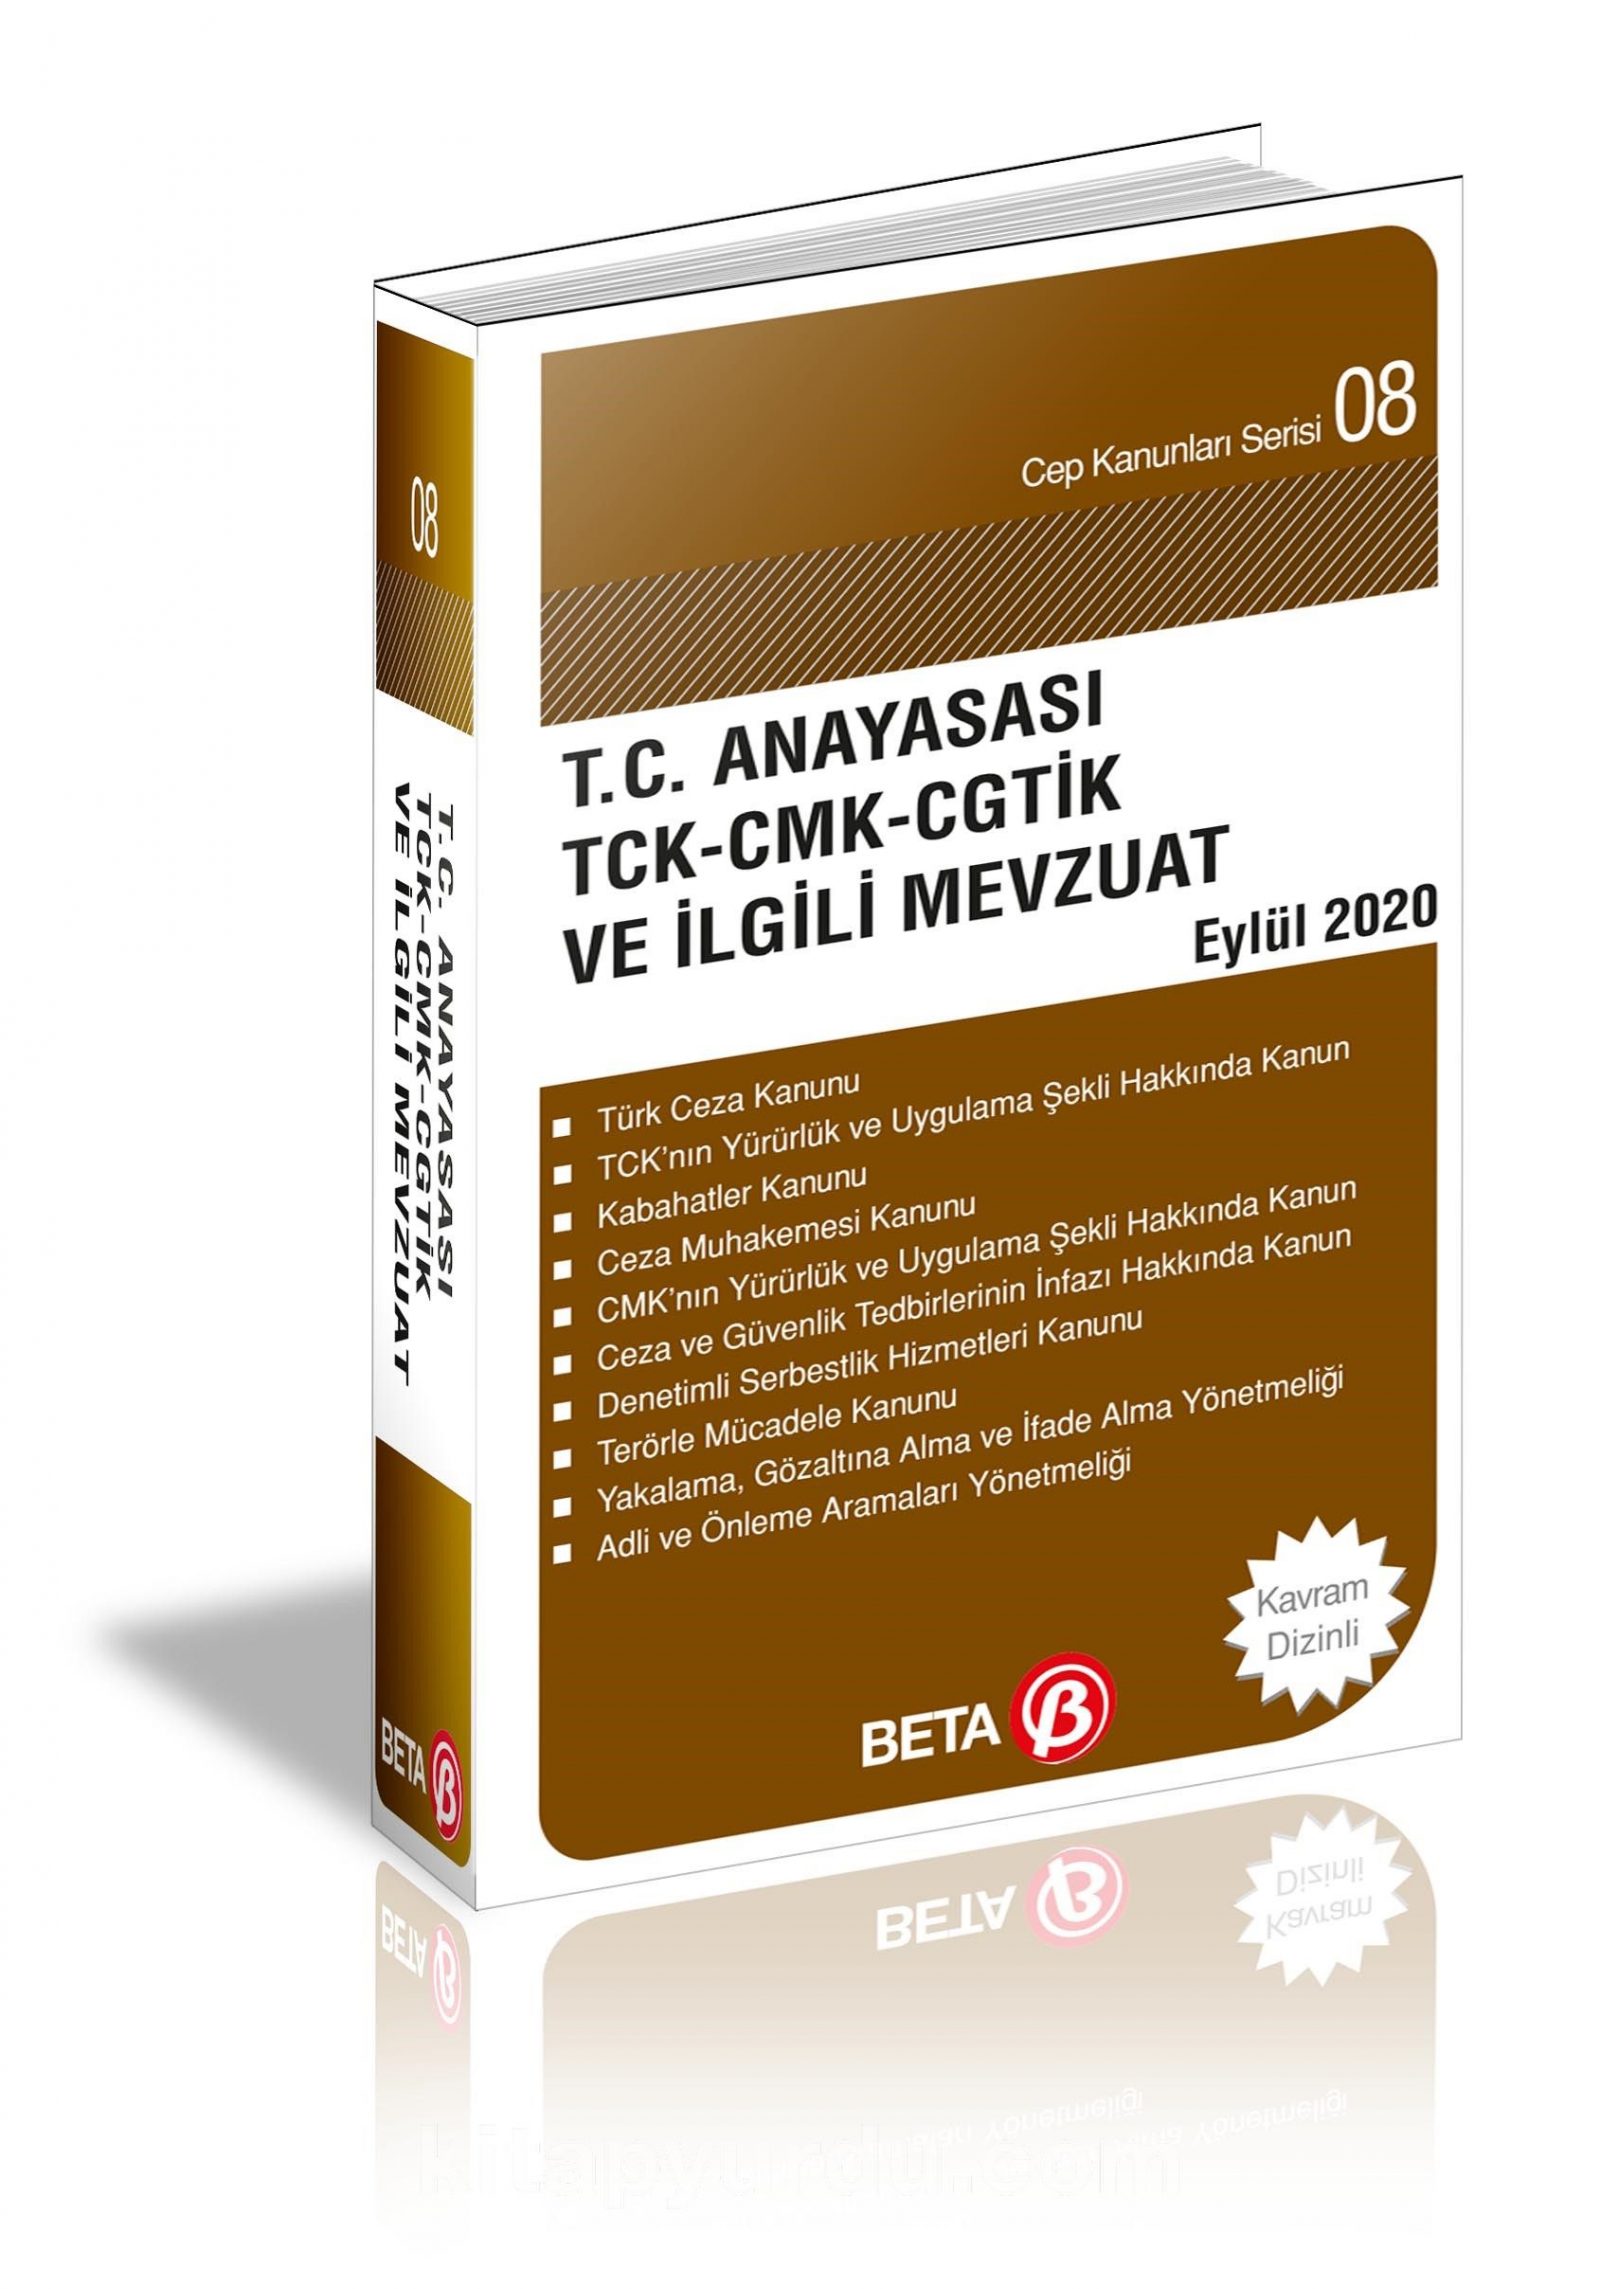 T.C. Anayasası TCK-CMK-CGTİK-PVSK ve İlgili Mevzuat / Cep Kanunları Serisi 08